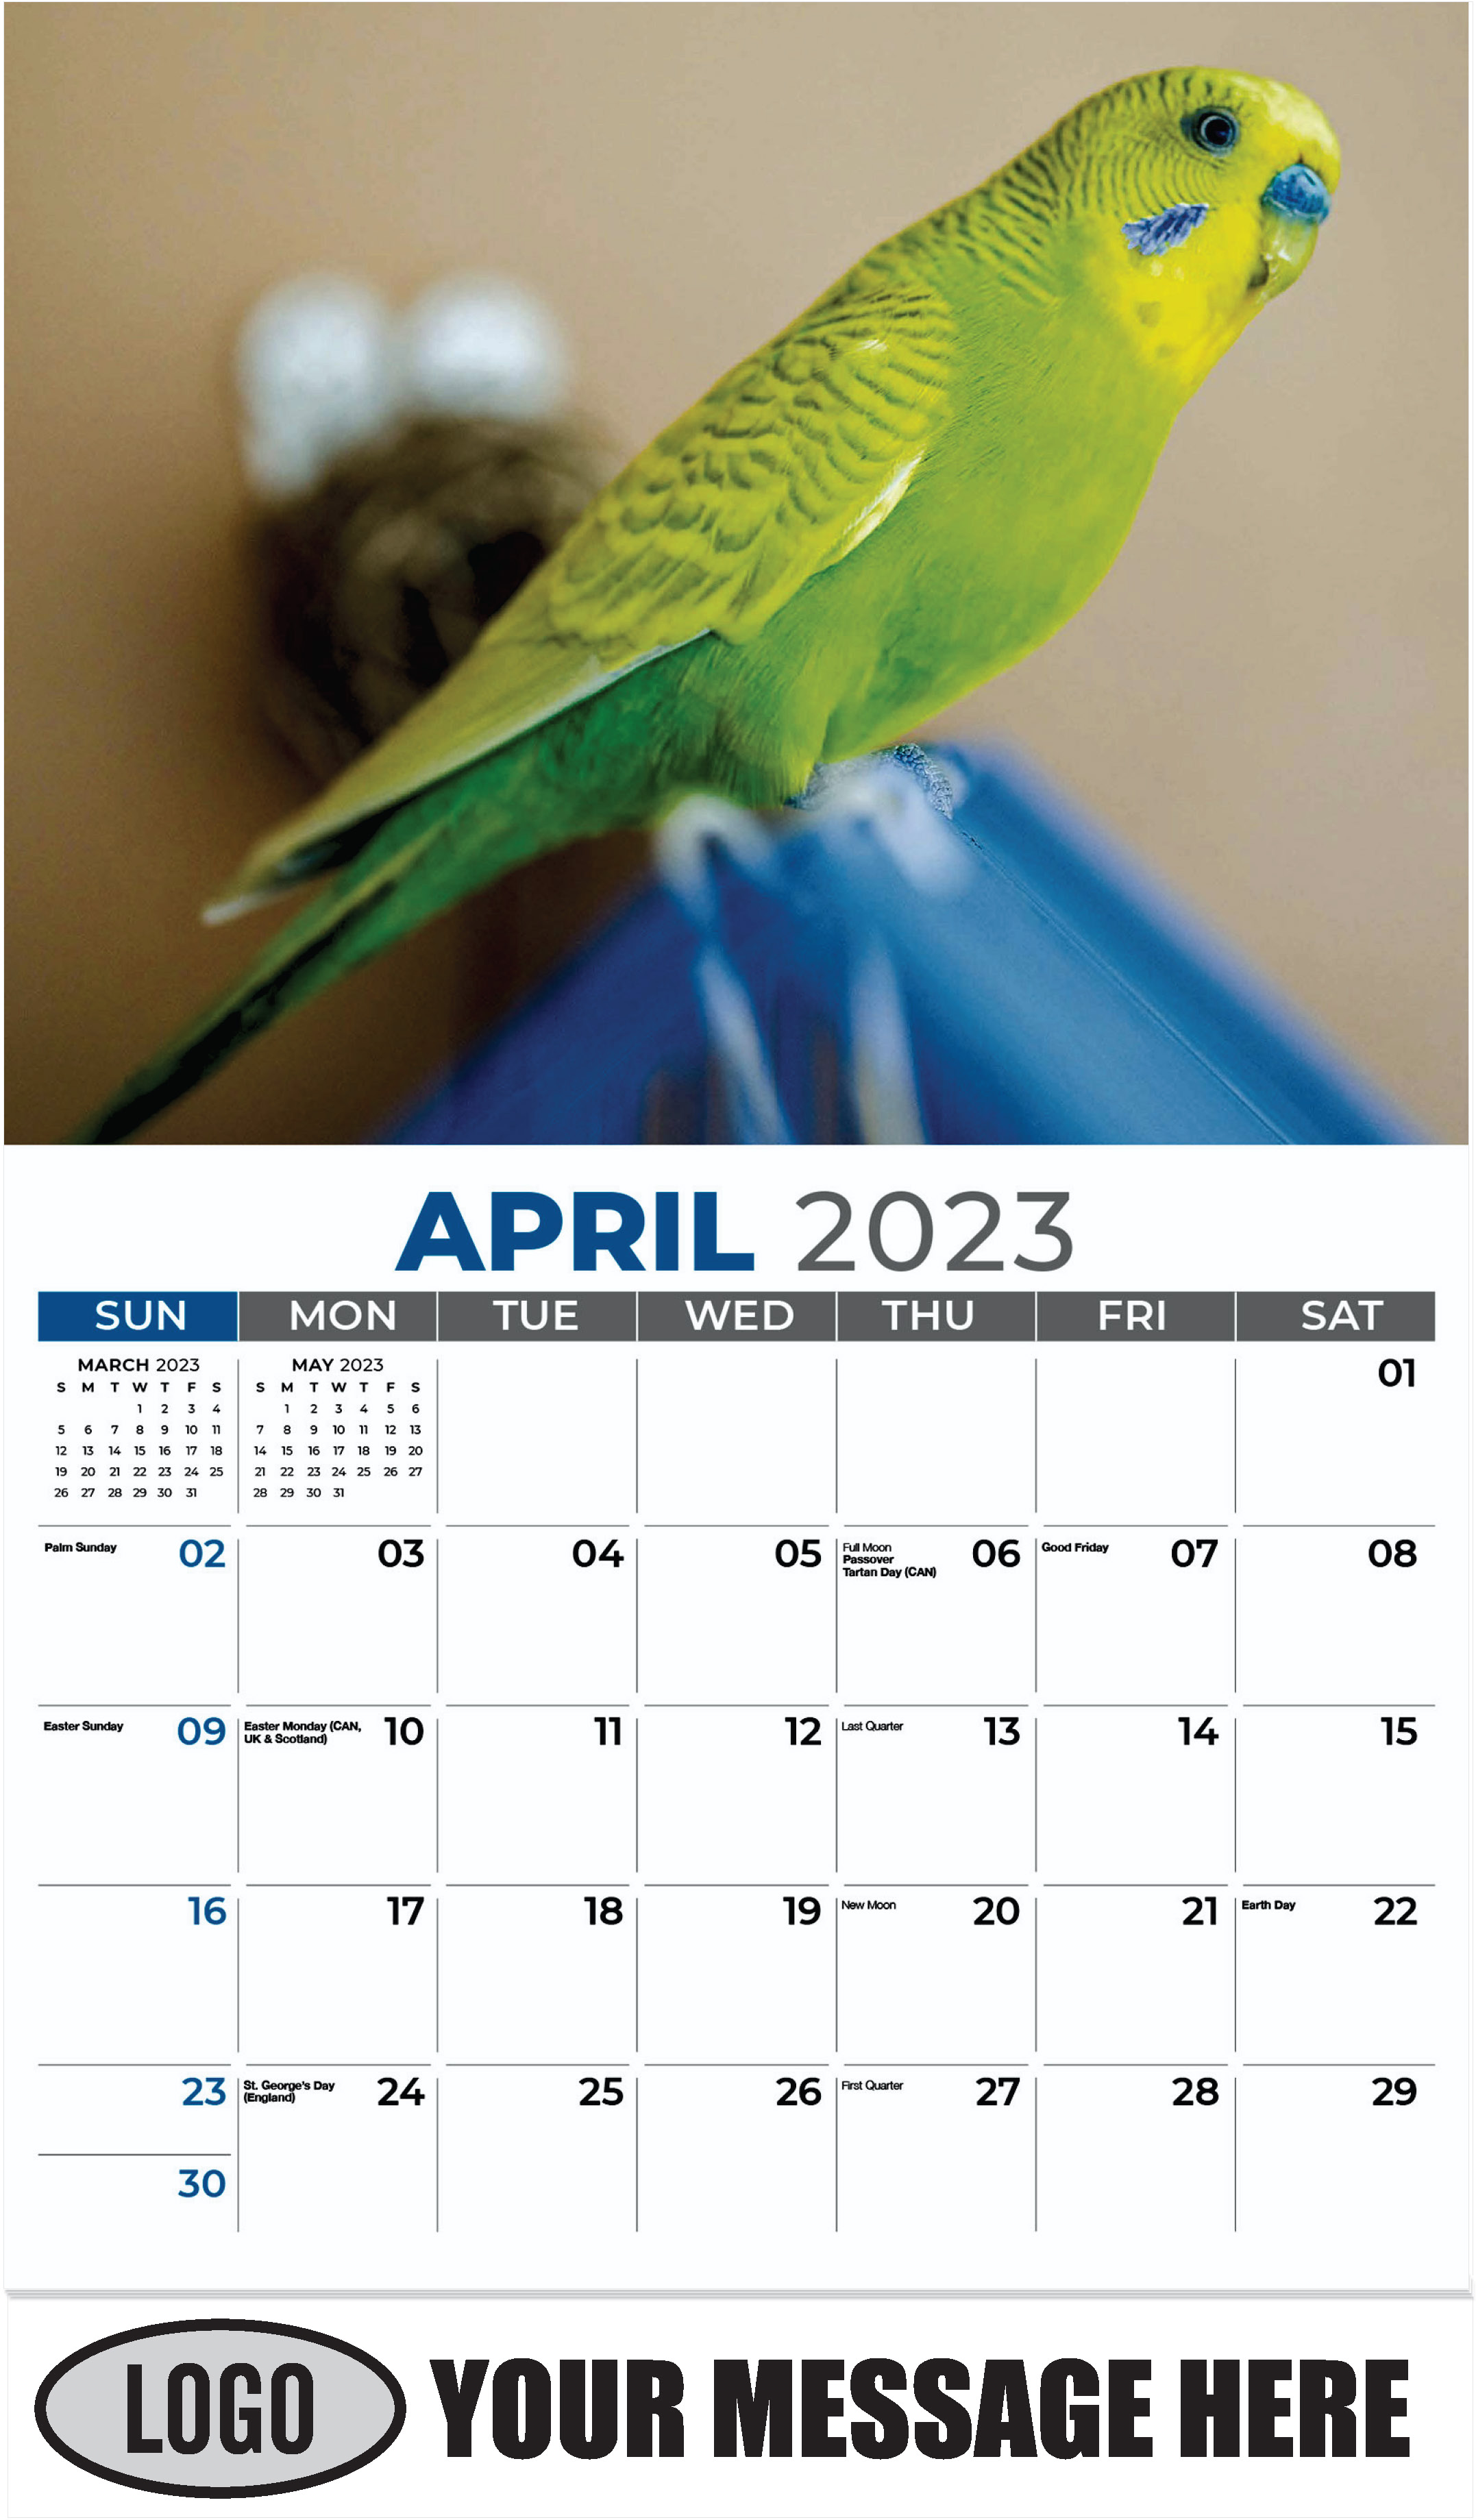 Budgie - April - Pets 2023 Promotional Calendar